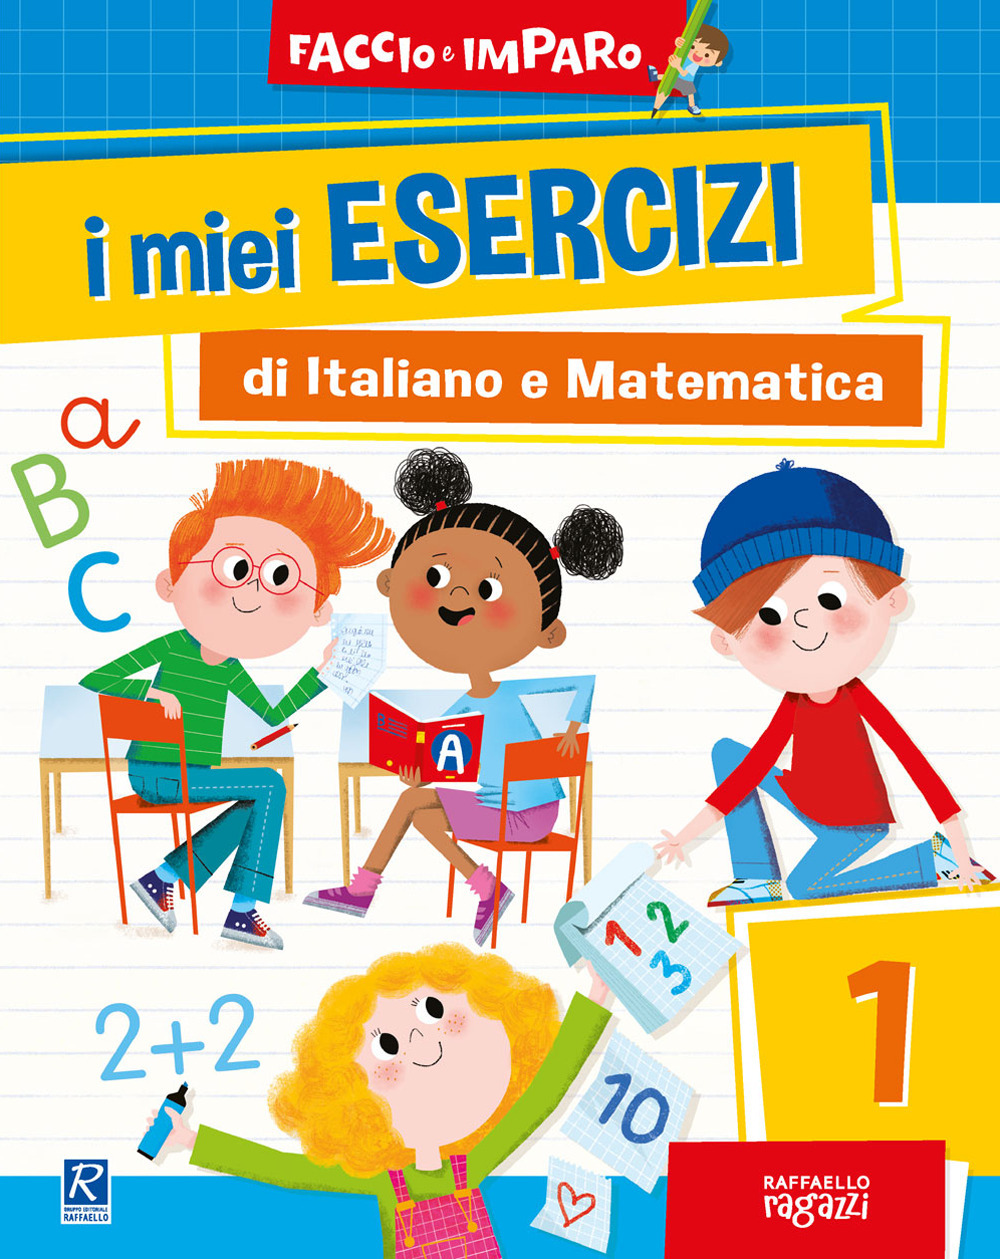 I miei esercizi di italiano e matematica. Vol. 1